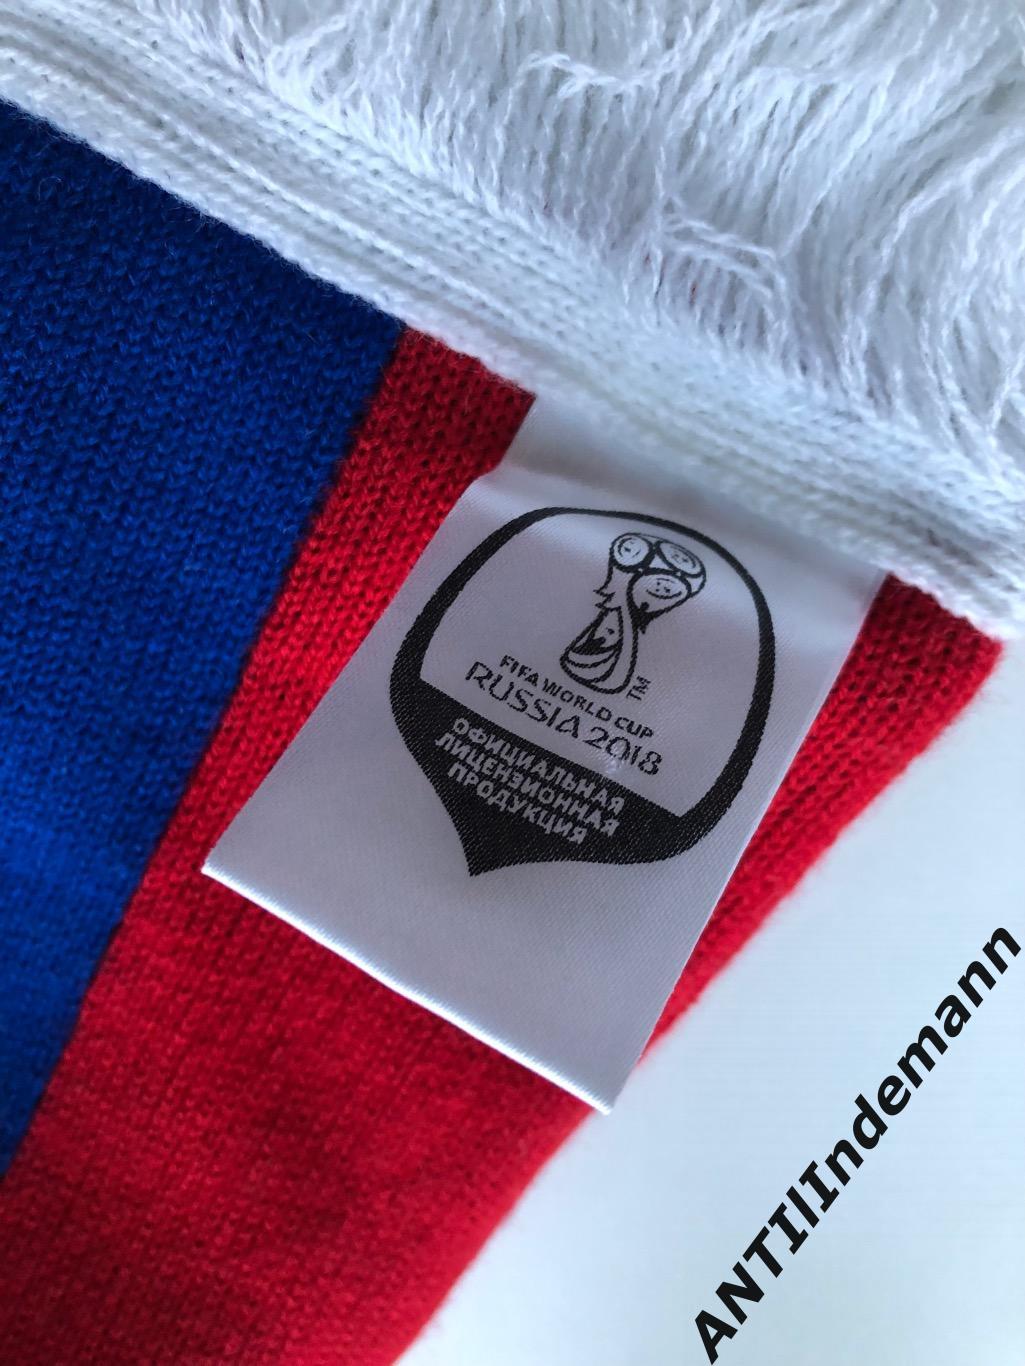 Шарф Сборной (сборная) России (Россия) по футболу с ЧМ 2018 года, официальный 3